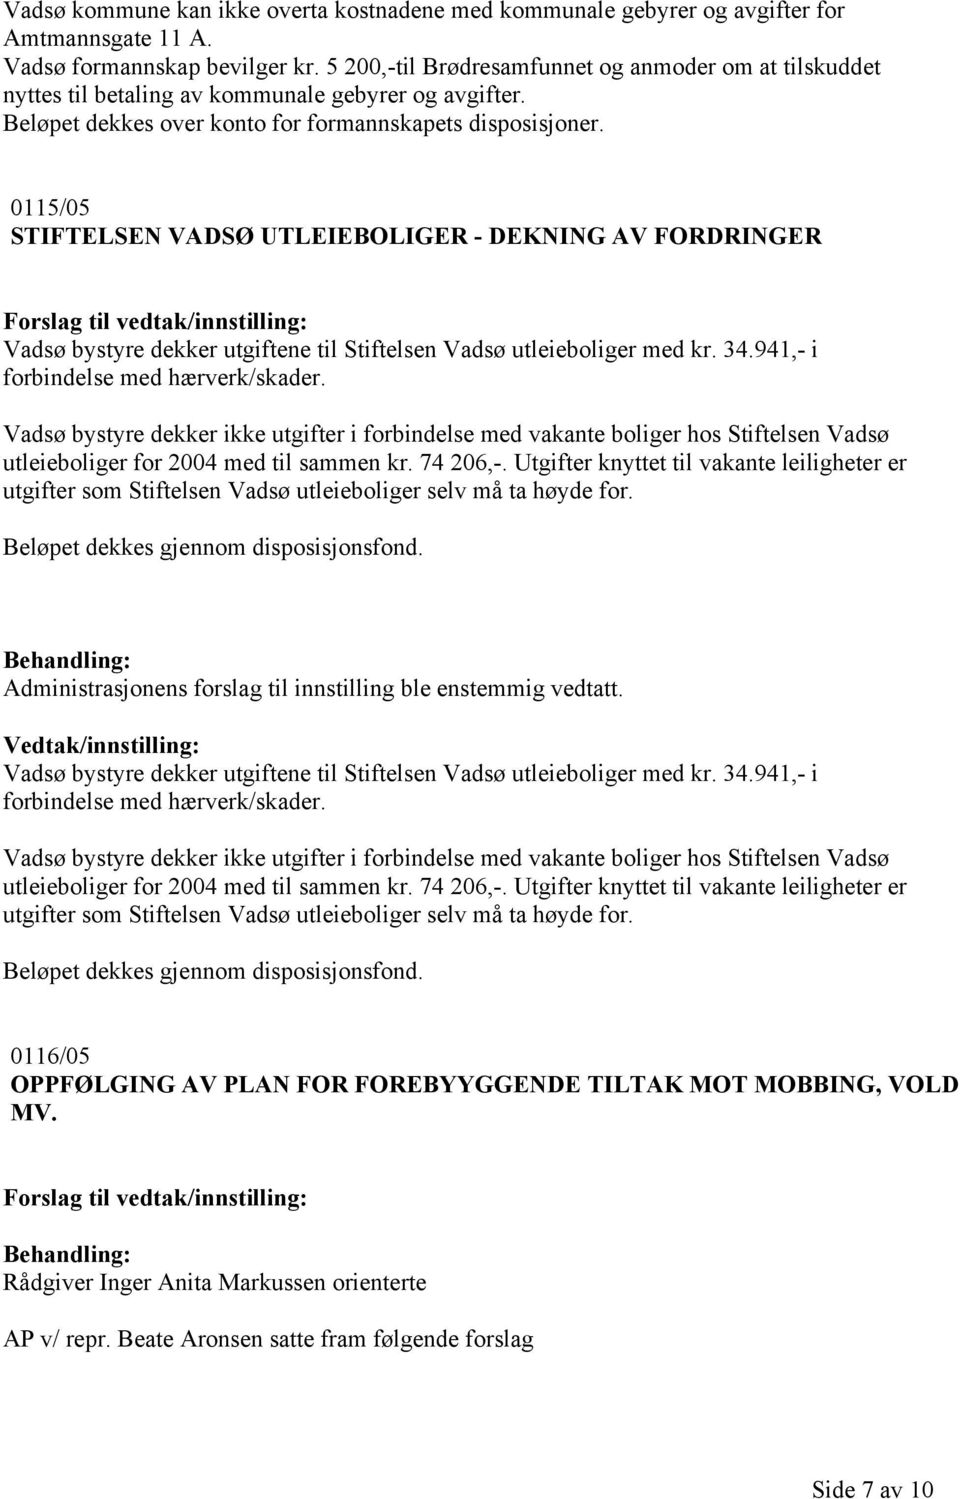 0115/05 STIFTELSEN VADSØ UTLEIEBOLIGER - DEKNING AV FORDRINGER Vadsø bystyre dekker utgiftene til Stiftelsen Vadsø utleieboliger med kr. 34.941,- i forbindelse med hærverk/skader.